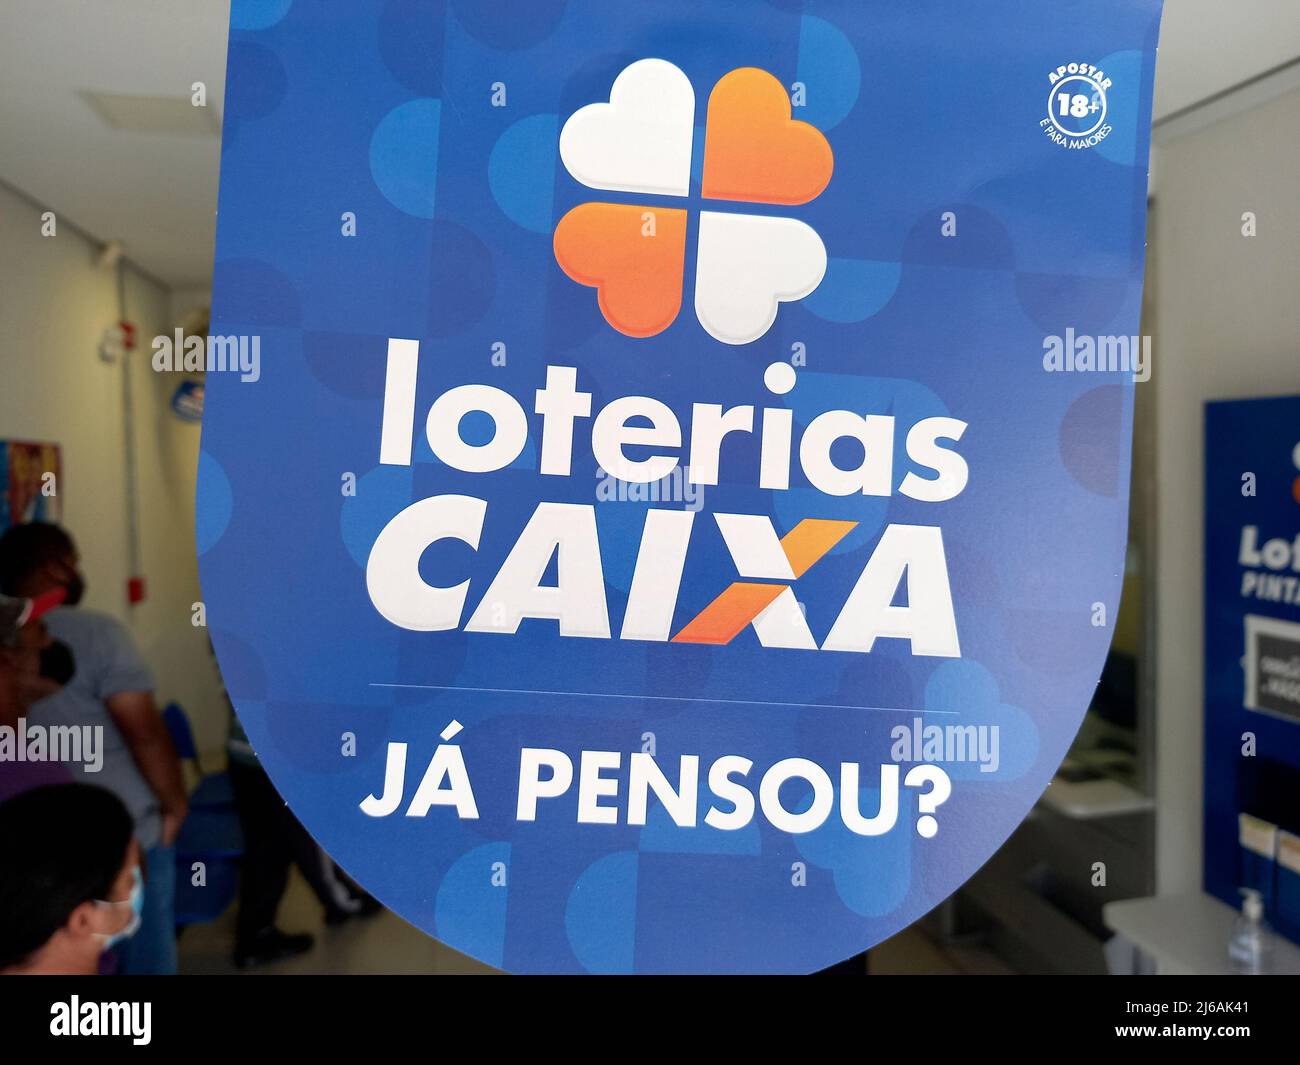 Minas Gerais, Brasile - 25 aprile 2022: Scheda pubblicitaria lotteria presso la casa della lotteria - loteria Caixa Foto Stock